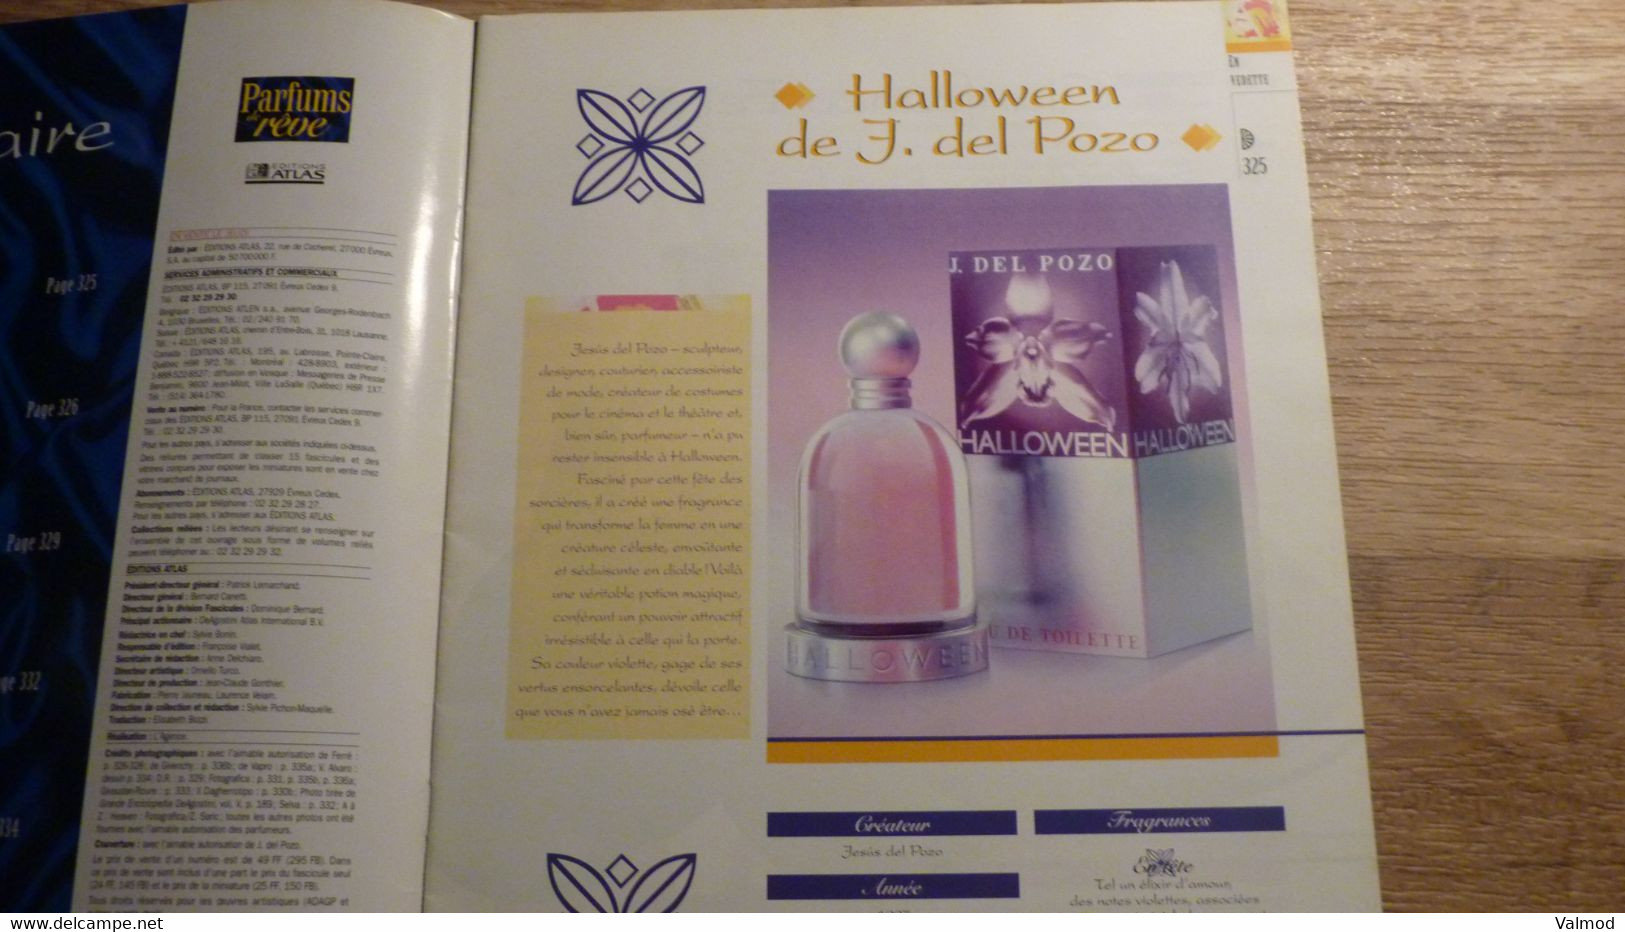 Magazine "Parfums De Rêve" N° 28 - J. Del Pozo "Halloween" - Editions Atlas - Revistas